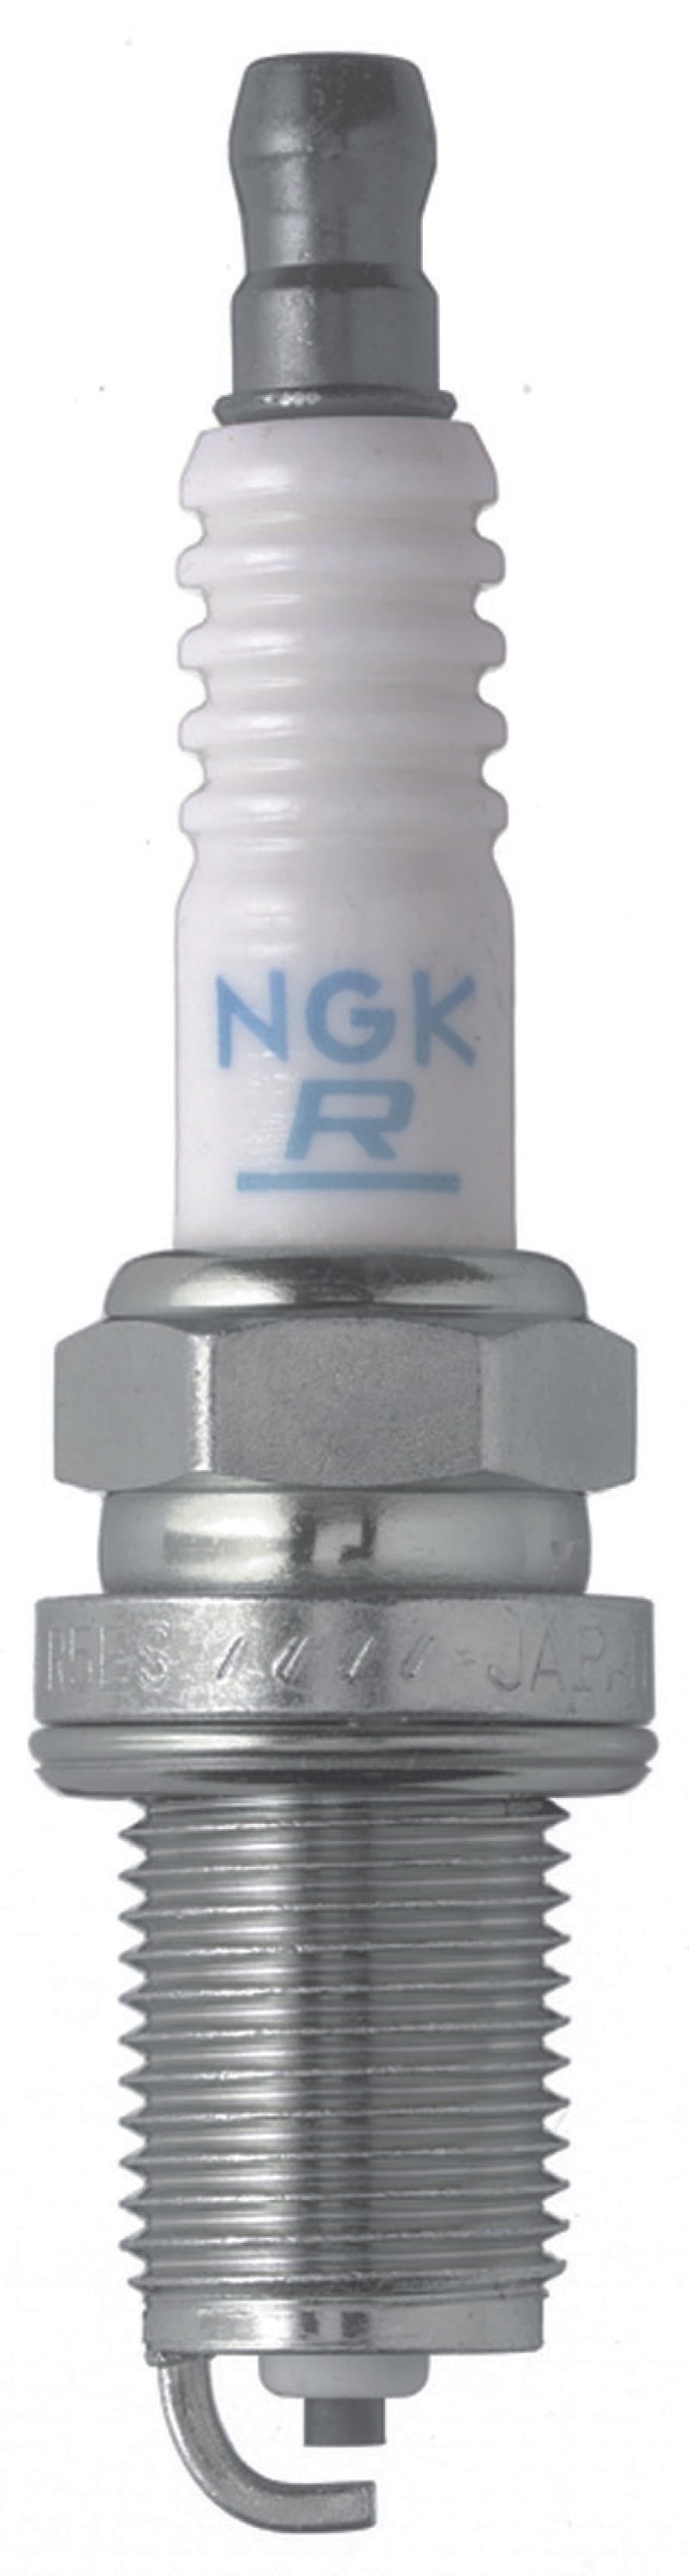 NGK V-Power Spark Plug Box of 4 (BKR7E-E)